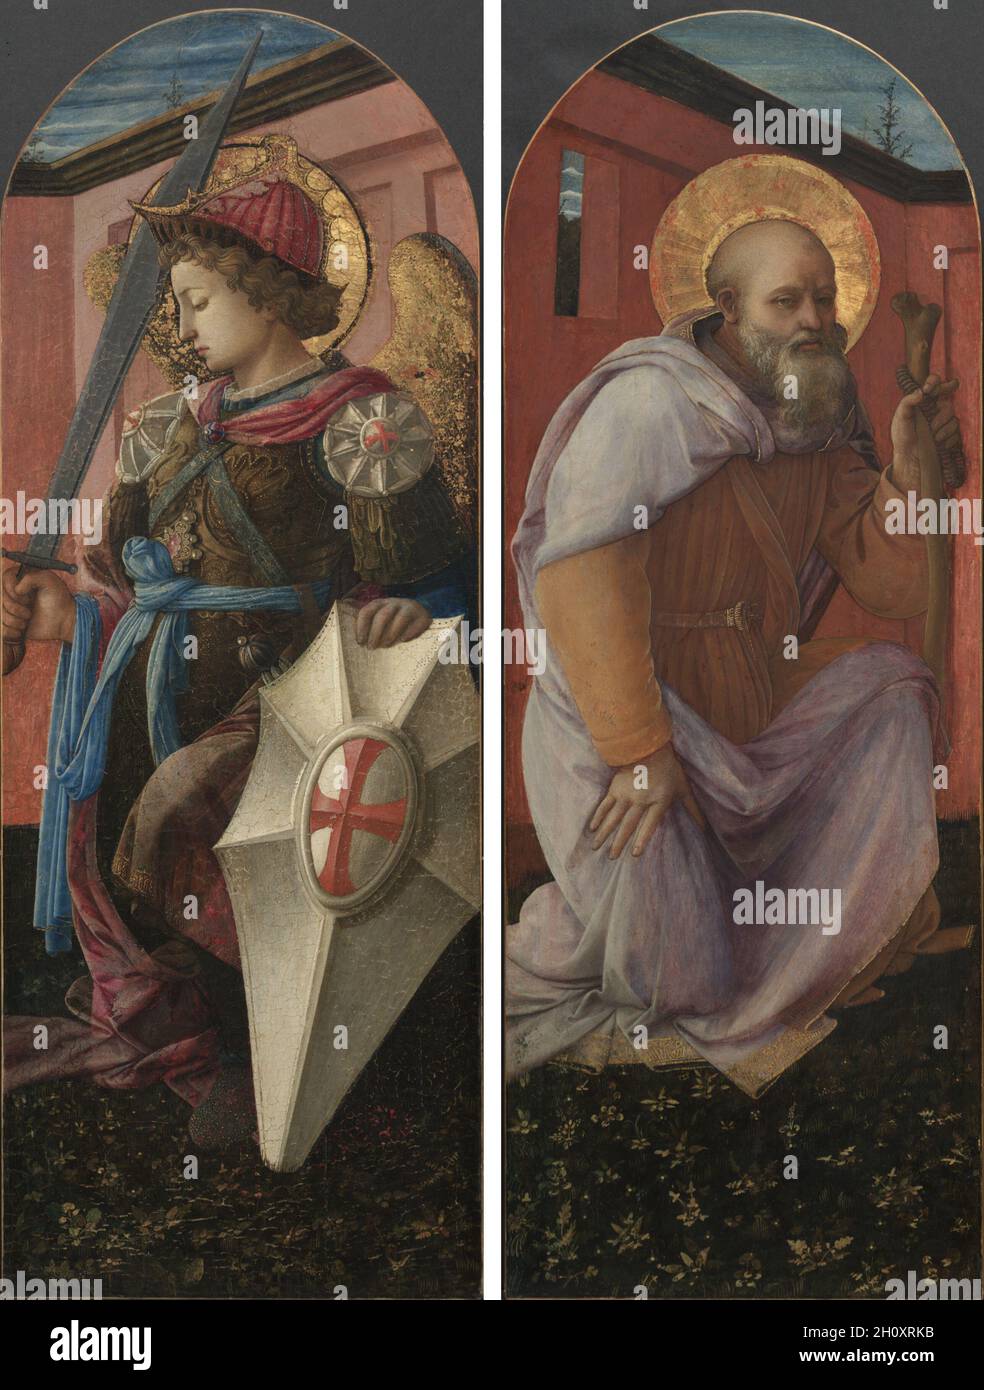 Par de paneles de un tríptico: El Arcángel Miguel y San Antonio Abbot, 1458. Filippo Lippi (italiano, c. 1406-1469). Temperatura sobre panel de madera; enmarcado: 94 x 40 x 6,5 cm (37 x 15 3/4 x 2 9/16 pulg.); sin enmarcar: 81,3 x 29,8 cm (32 x 11 3/4 pulg.). Estos paneles que representan a los Santos Anthony el Abad y Michael flanquearon originalmente una escena central de la Virgen y el Niño con los Ángeles, ahora perdidos, para formar un tríptico. Giovanni di Cosimo de Medici de Florencia encargó el conjunto en 1457 como regalo a Alfonso V de Aragón. FRA Filippo Lippi, un fraile carmelita y uno de los grandes maestros de Renaissanc temprano Foto de stock